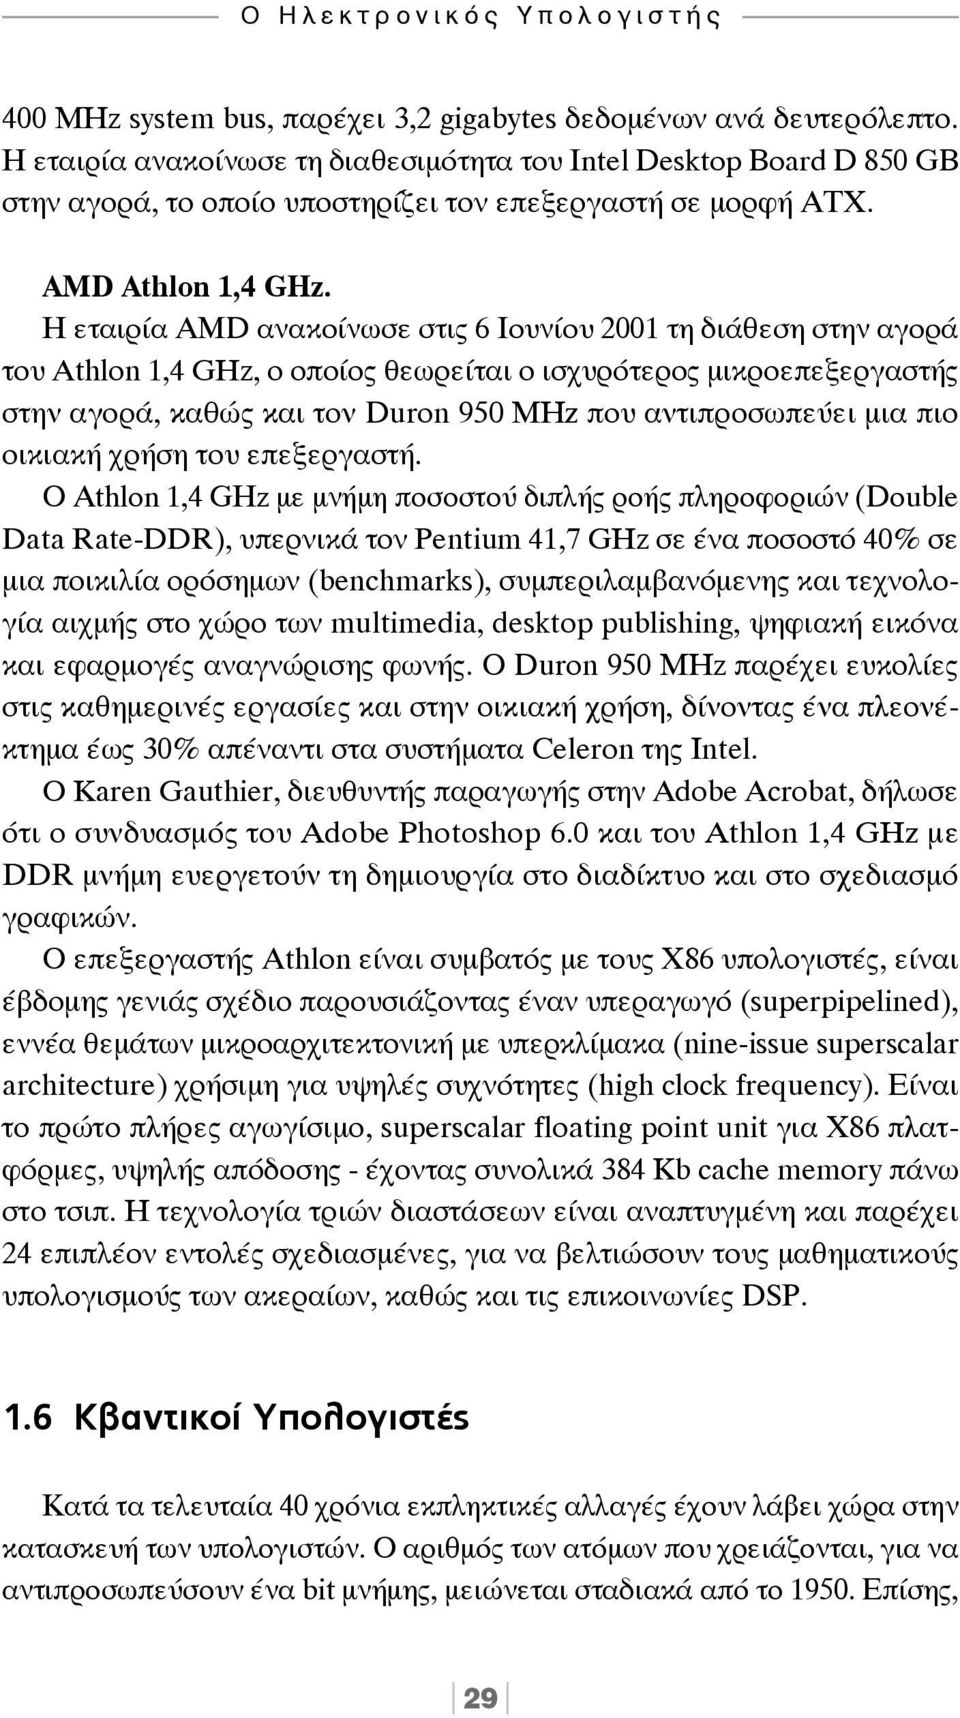 Η εταιρία AMD ανακοίνωσε στις 6 Ιουνίου 2001 τη διάθεση στην αγορά του Athlon 1,4 GHz, o οποίος θεωρείται ο ισχυρότερος μικροεπεξεργαστής στην αγορά, καθώς και τον Duron 950 MHz που αντιπροσωπεύει